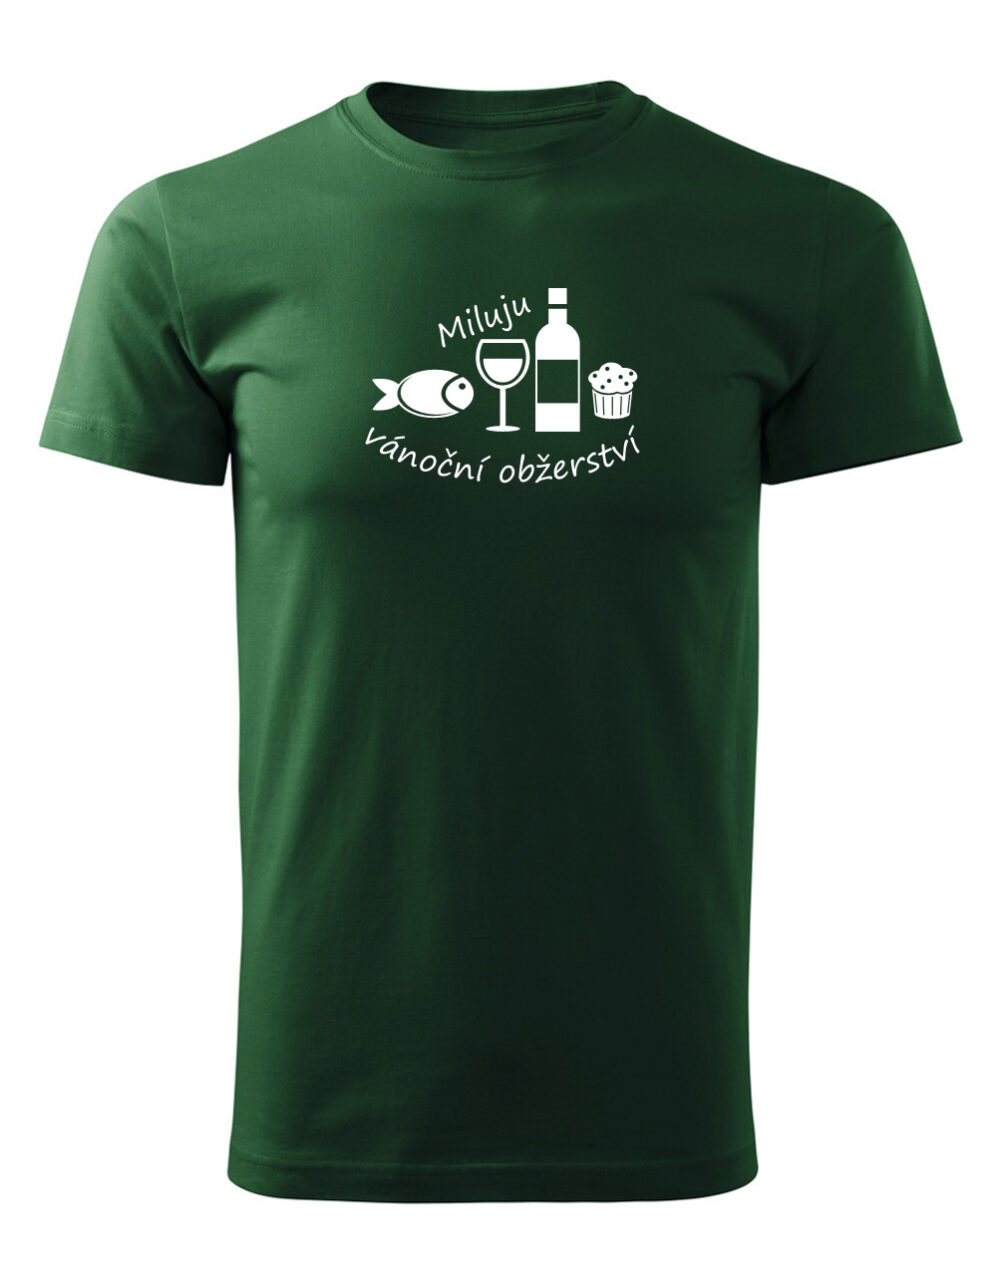 Pánské tričko s potiskem Miluju vánoční obžerství lahvově zelená